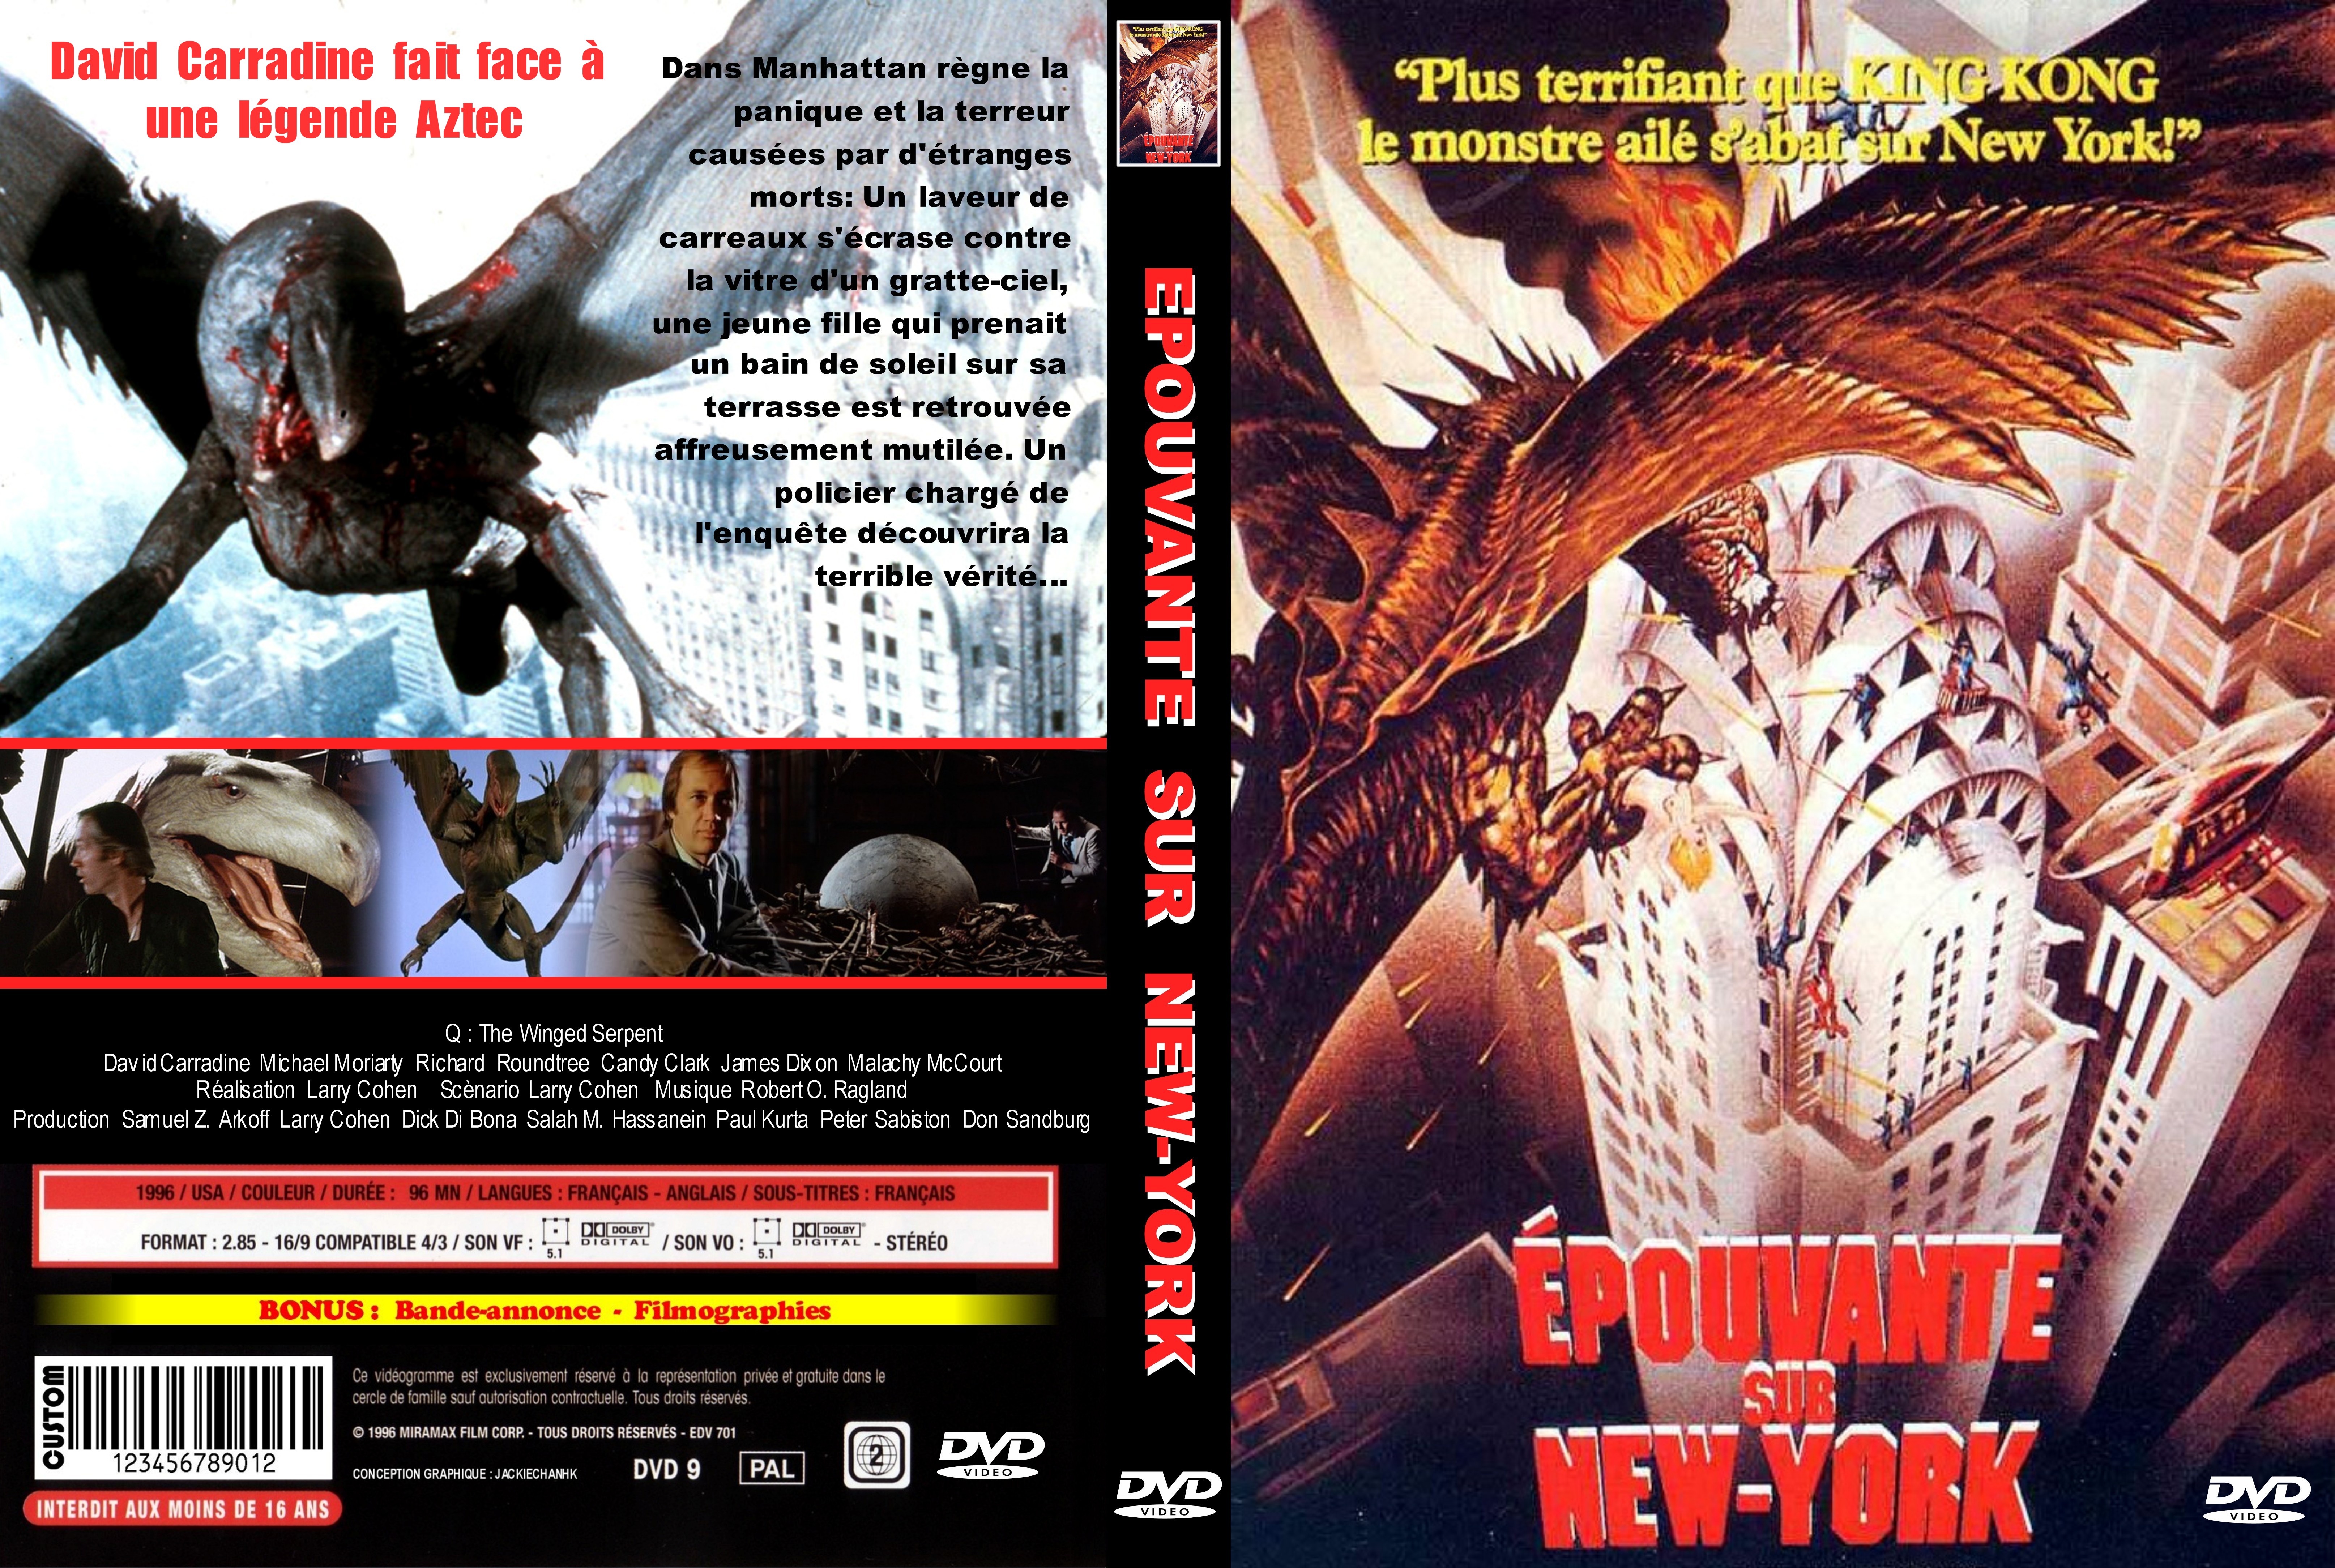 Jaquette DVD Epouvante sur New-York custom